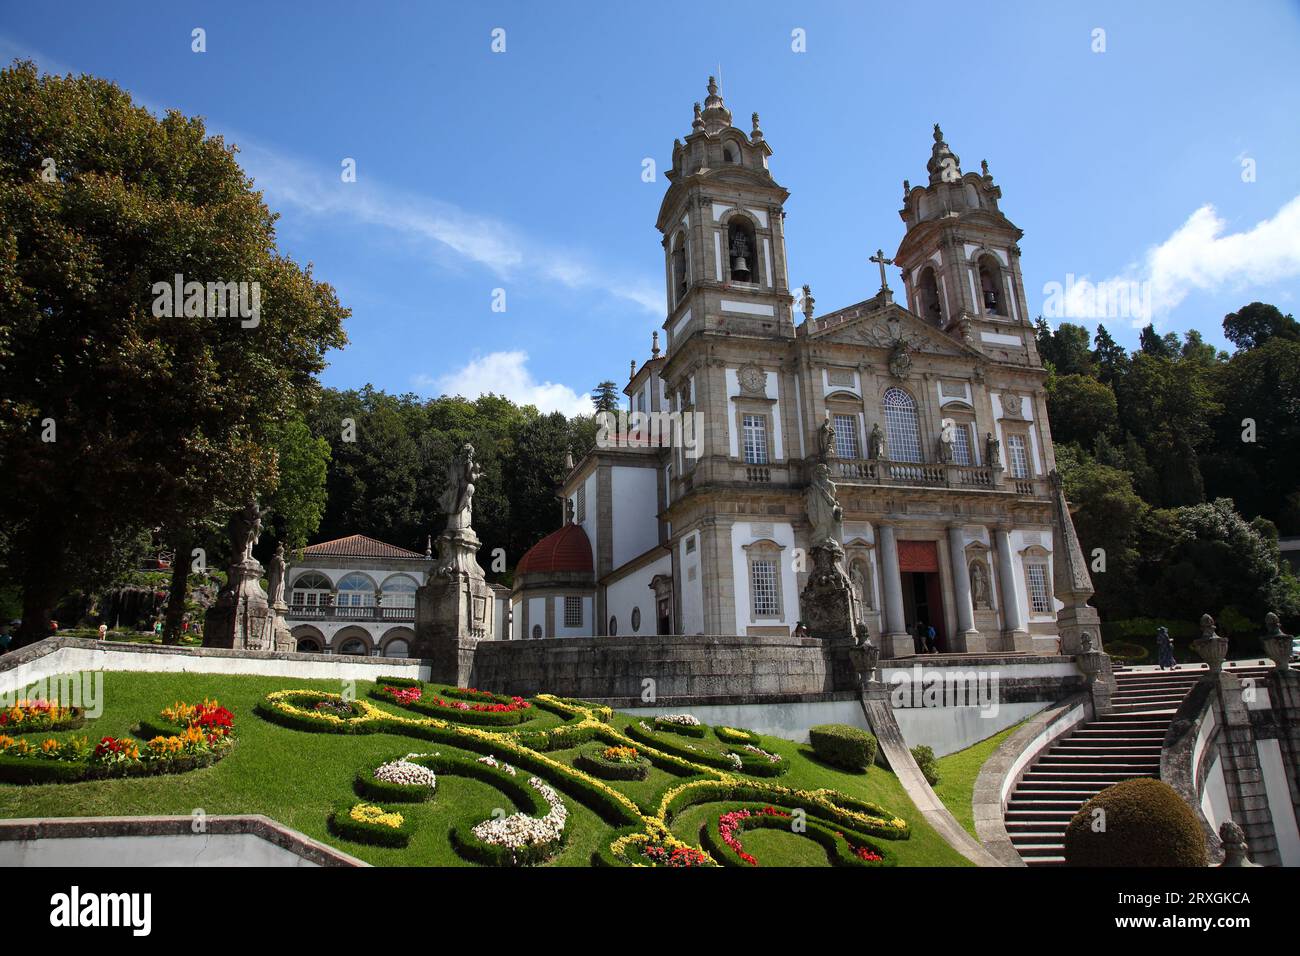 Le sanctuaire de BOM Jesus de Monte, dans le style baroque du Nord, à 5 km à l'est de Braga dans le nord du Portugal Banque D'Images